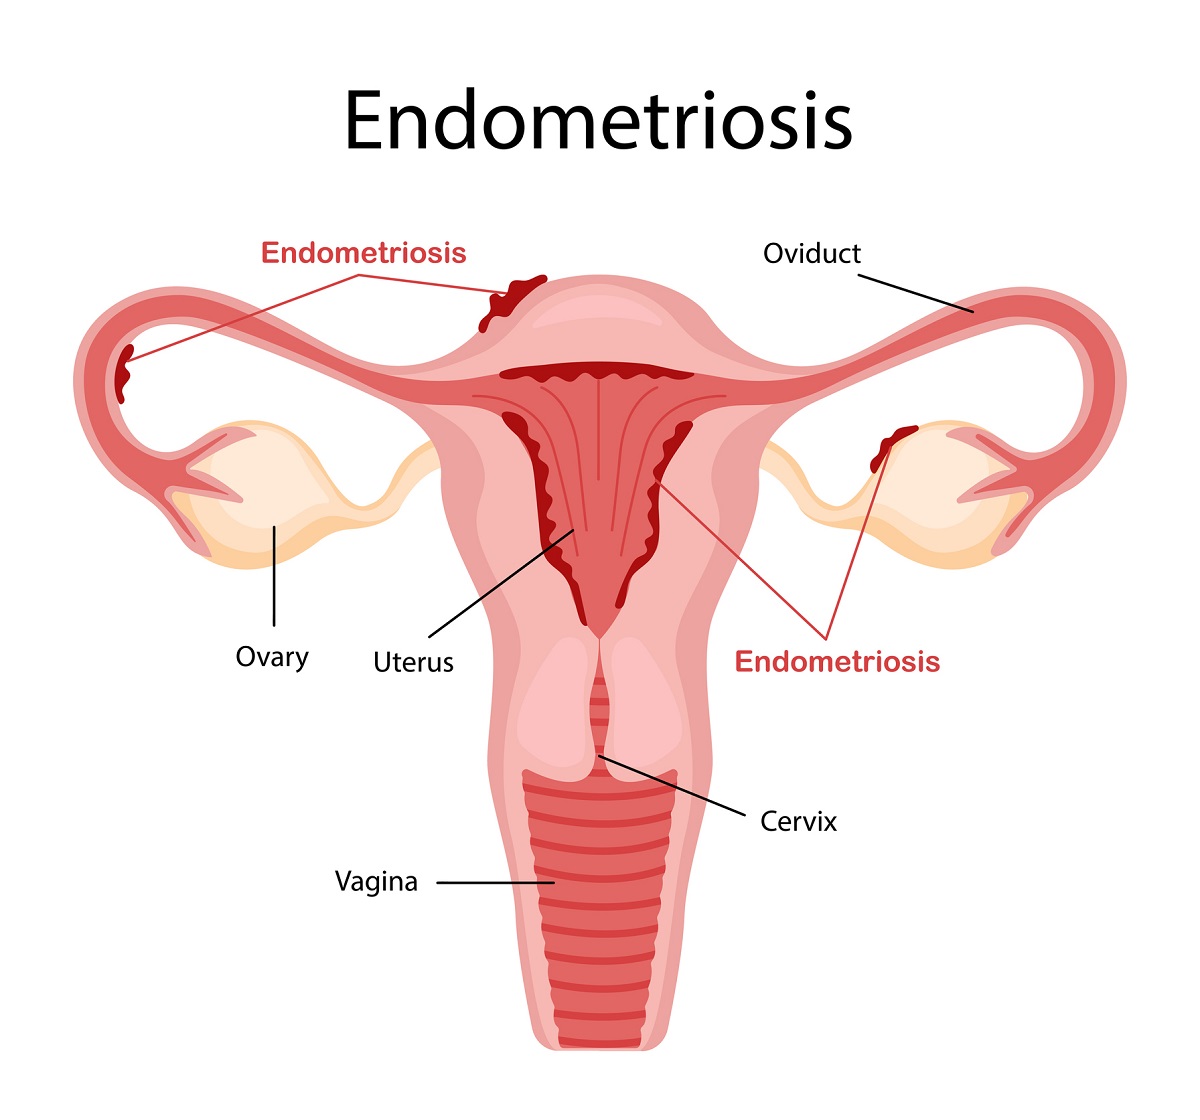 Endometrióza a výskyt endometria mimo dutiny maternice